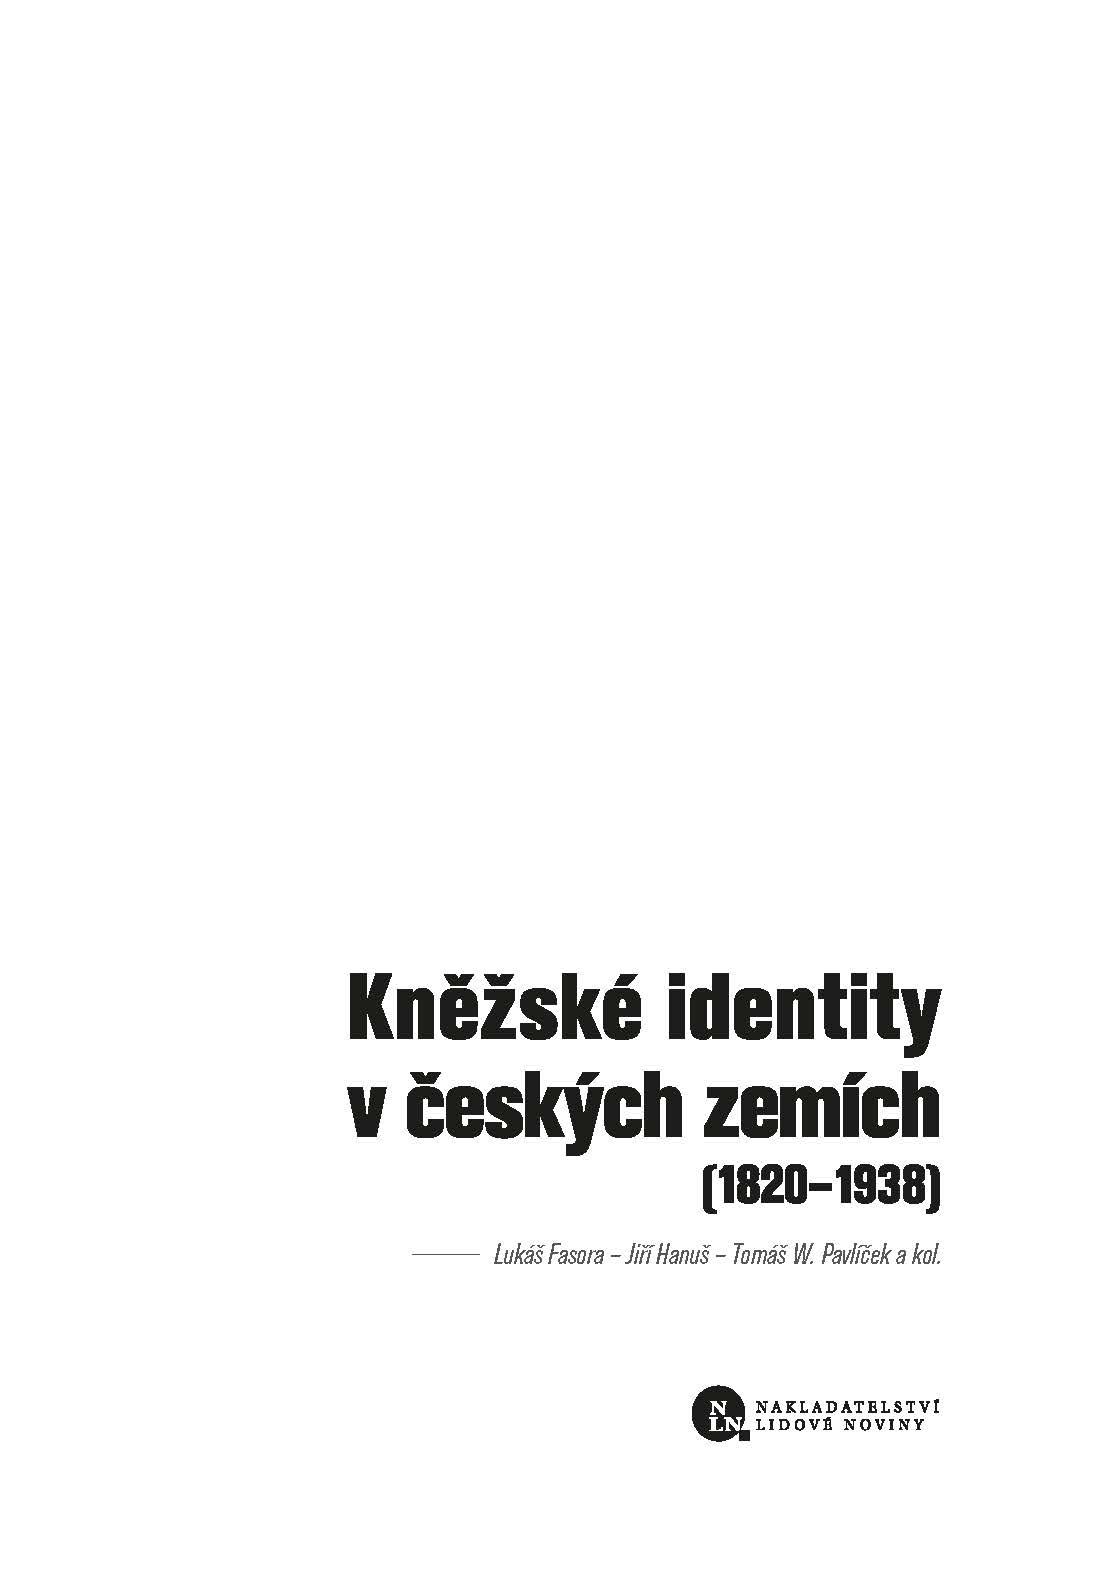 Kněžské identity v českých zemích ukázka-1